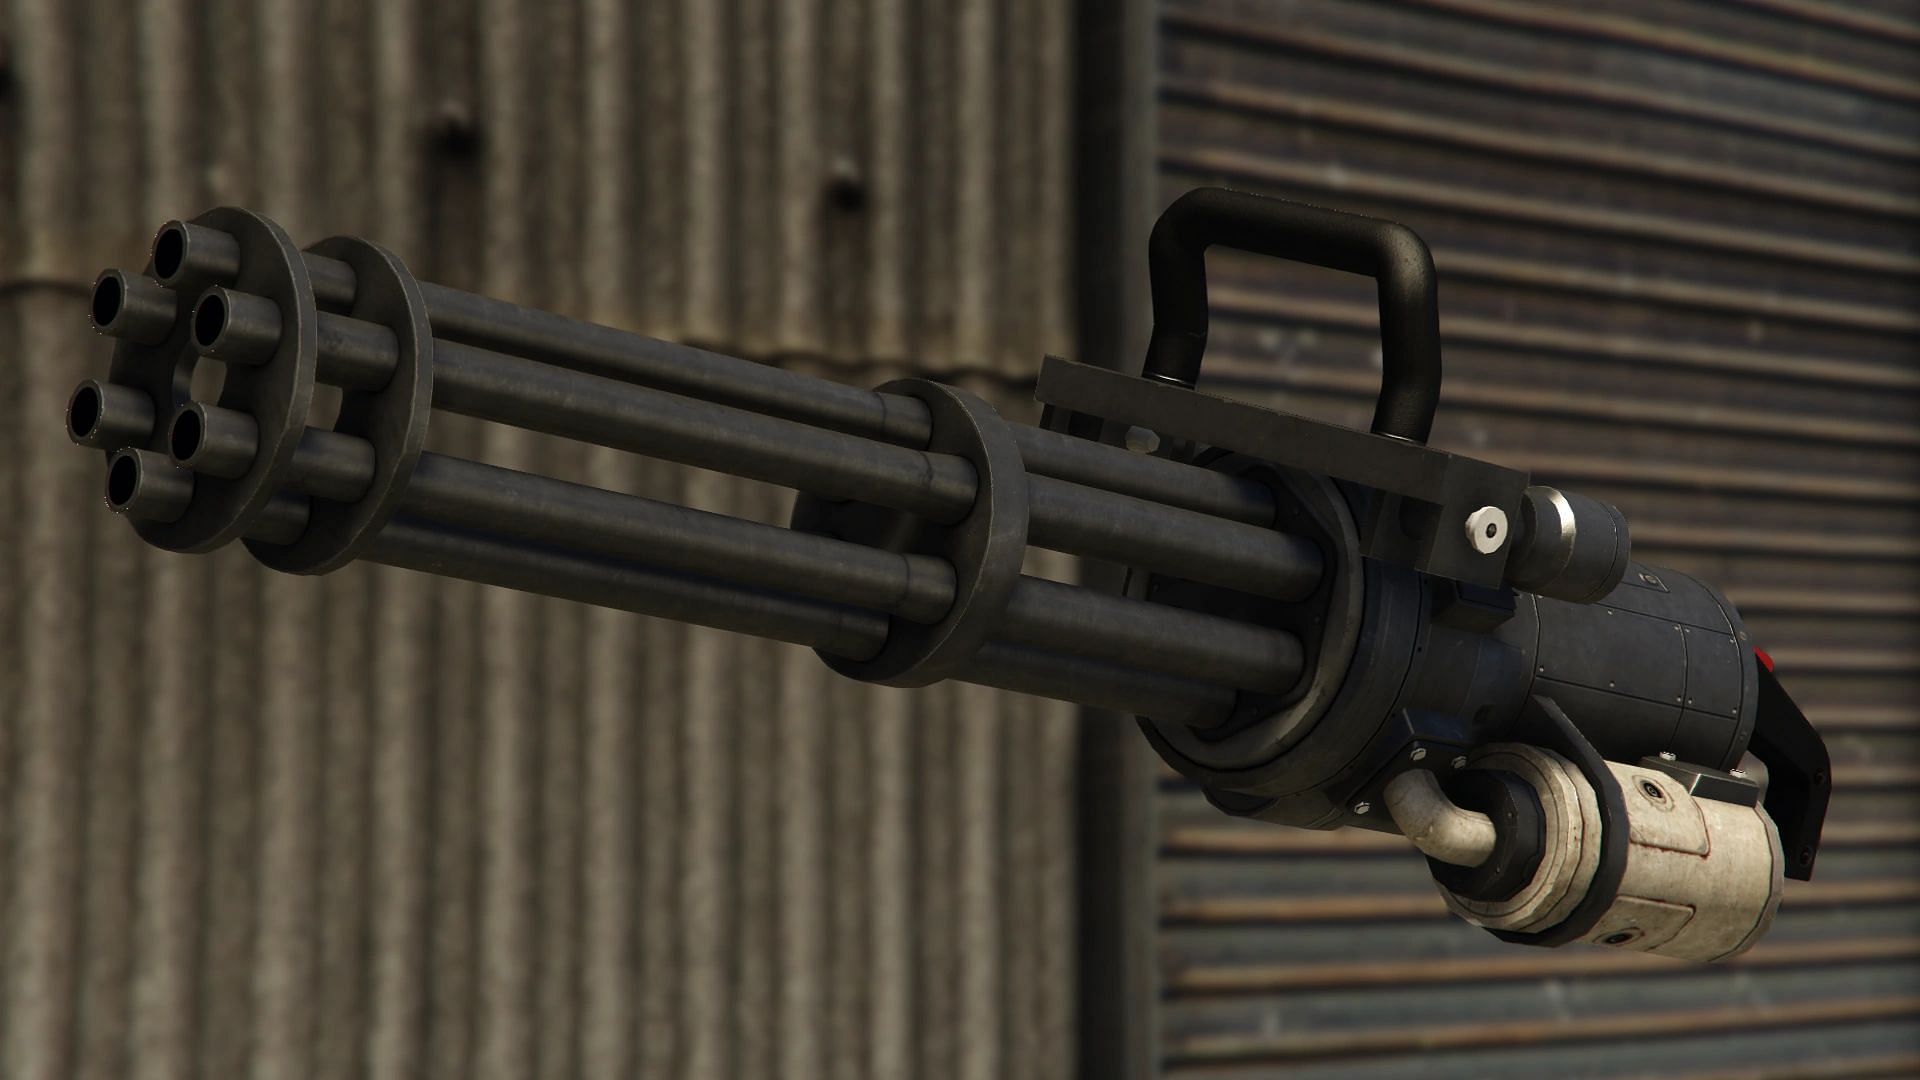 Minigun in GTA 5. (Image via GTA.Fandom.com)